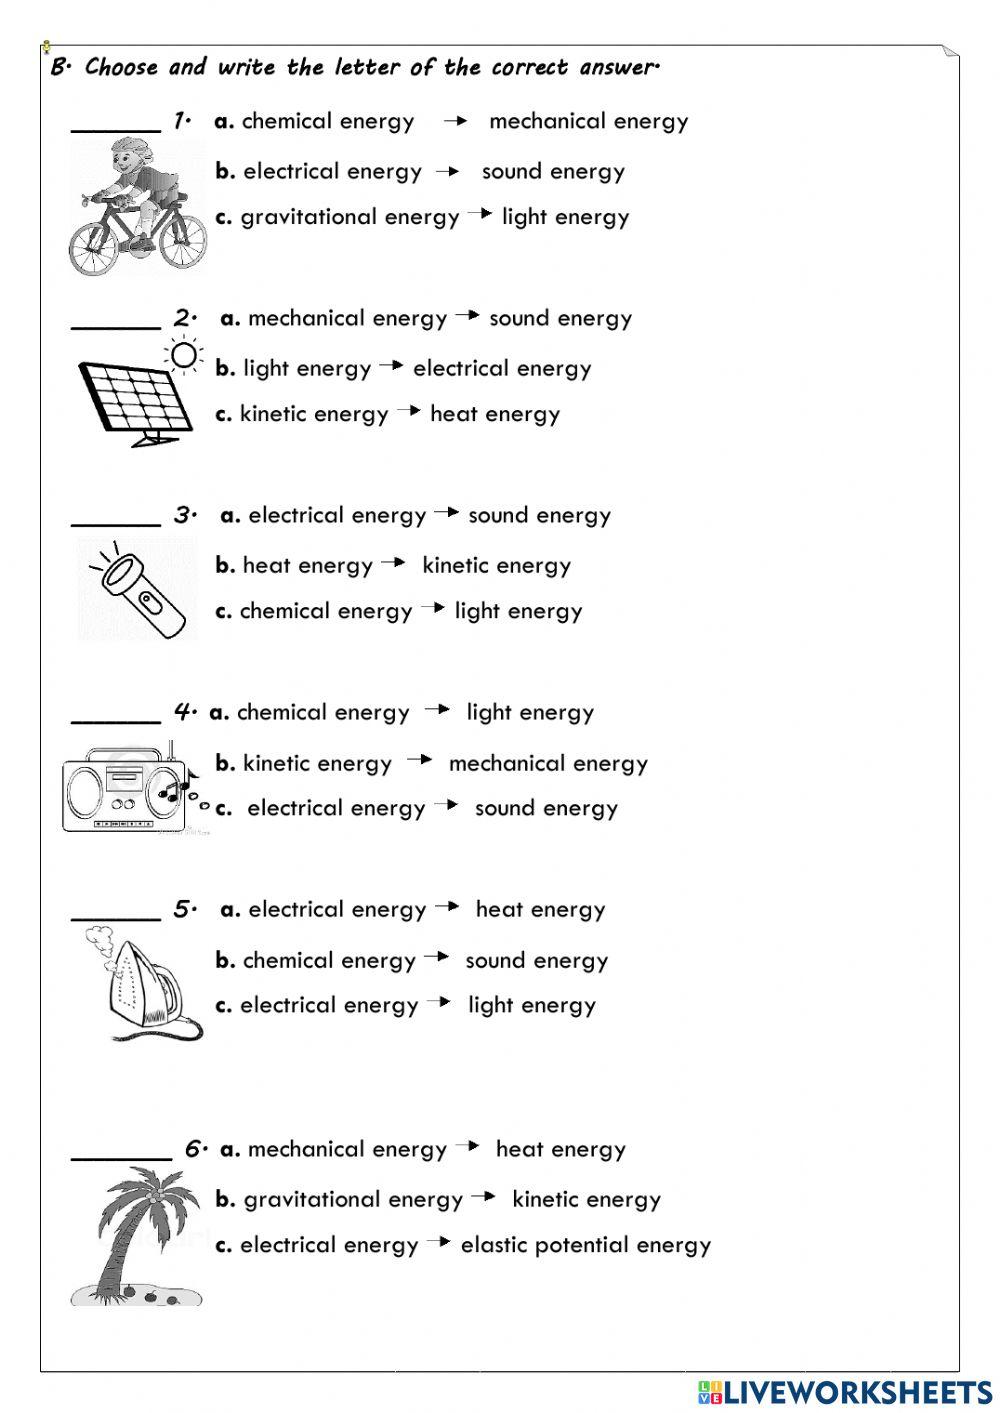 Chapter 5 - Energy